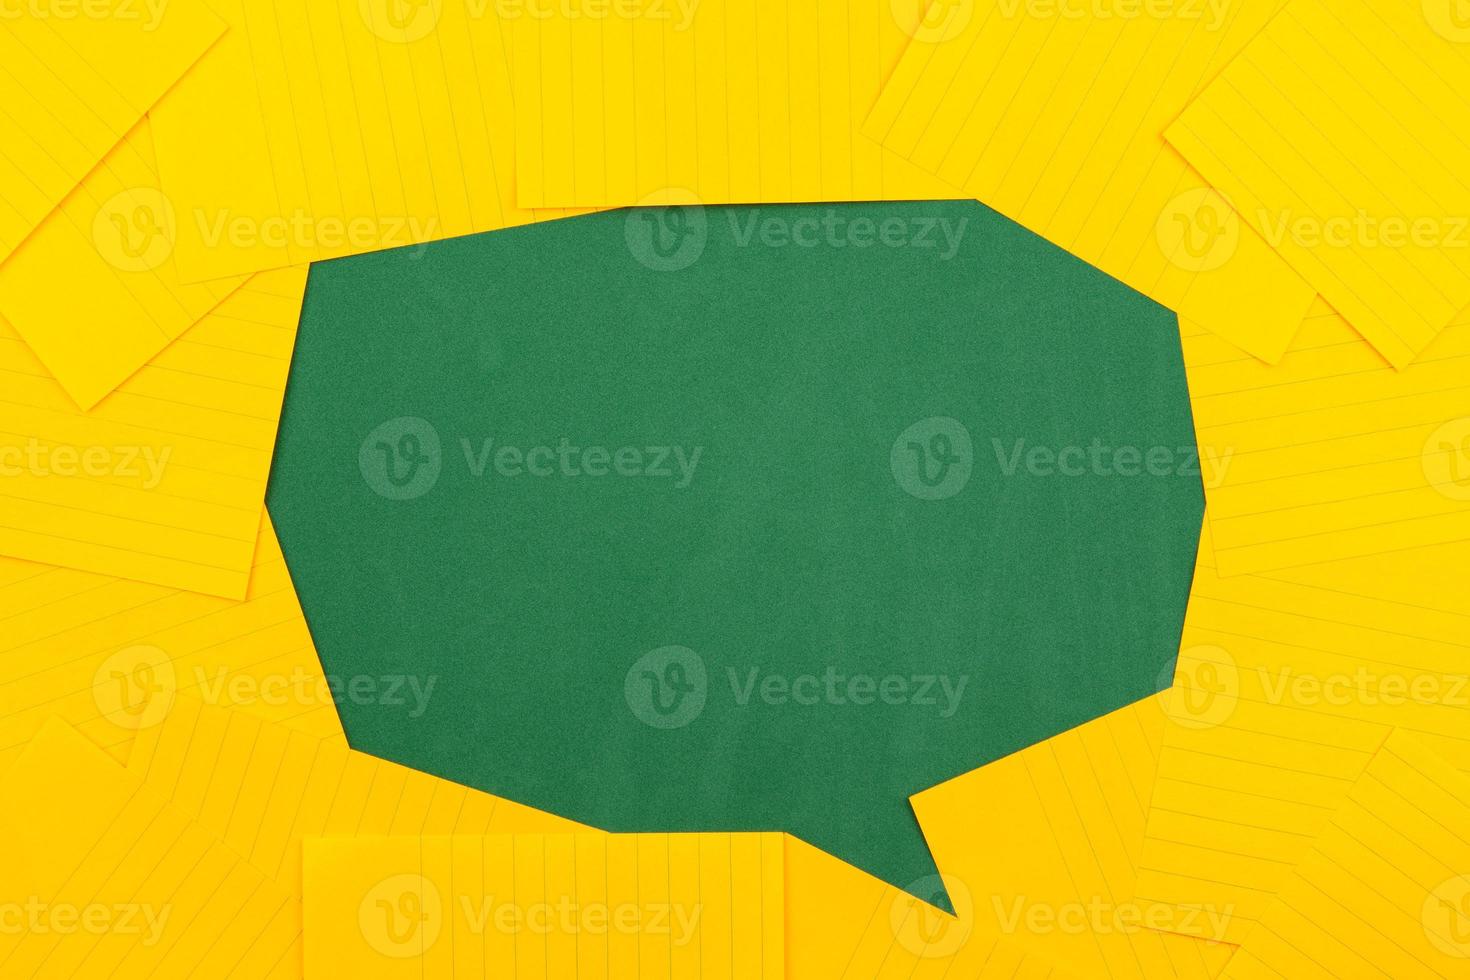 Des feuilles de papier orange sur une commission scolaire verte forment une bulle de discussion photo